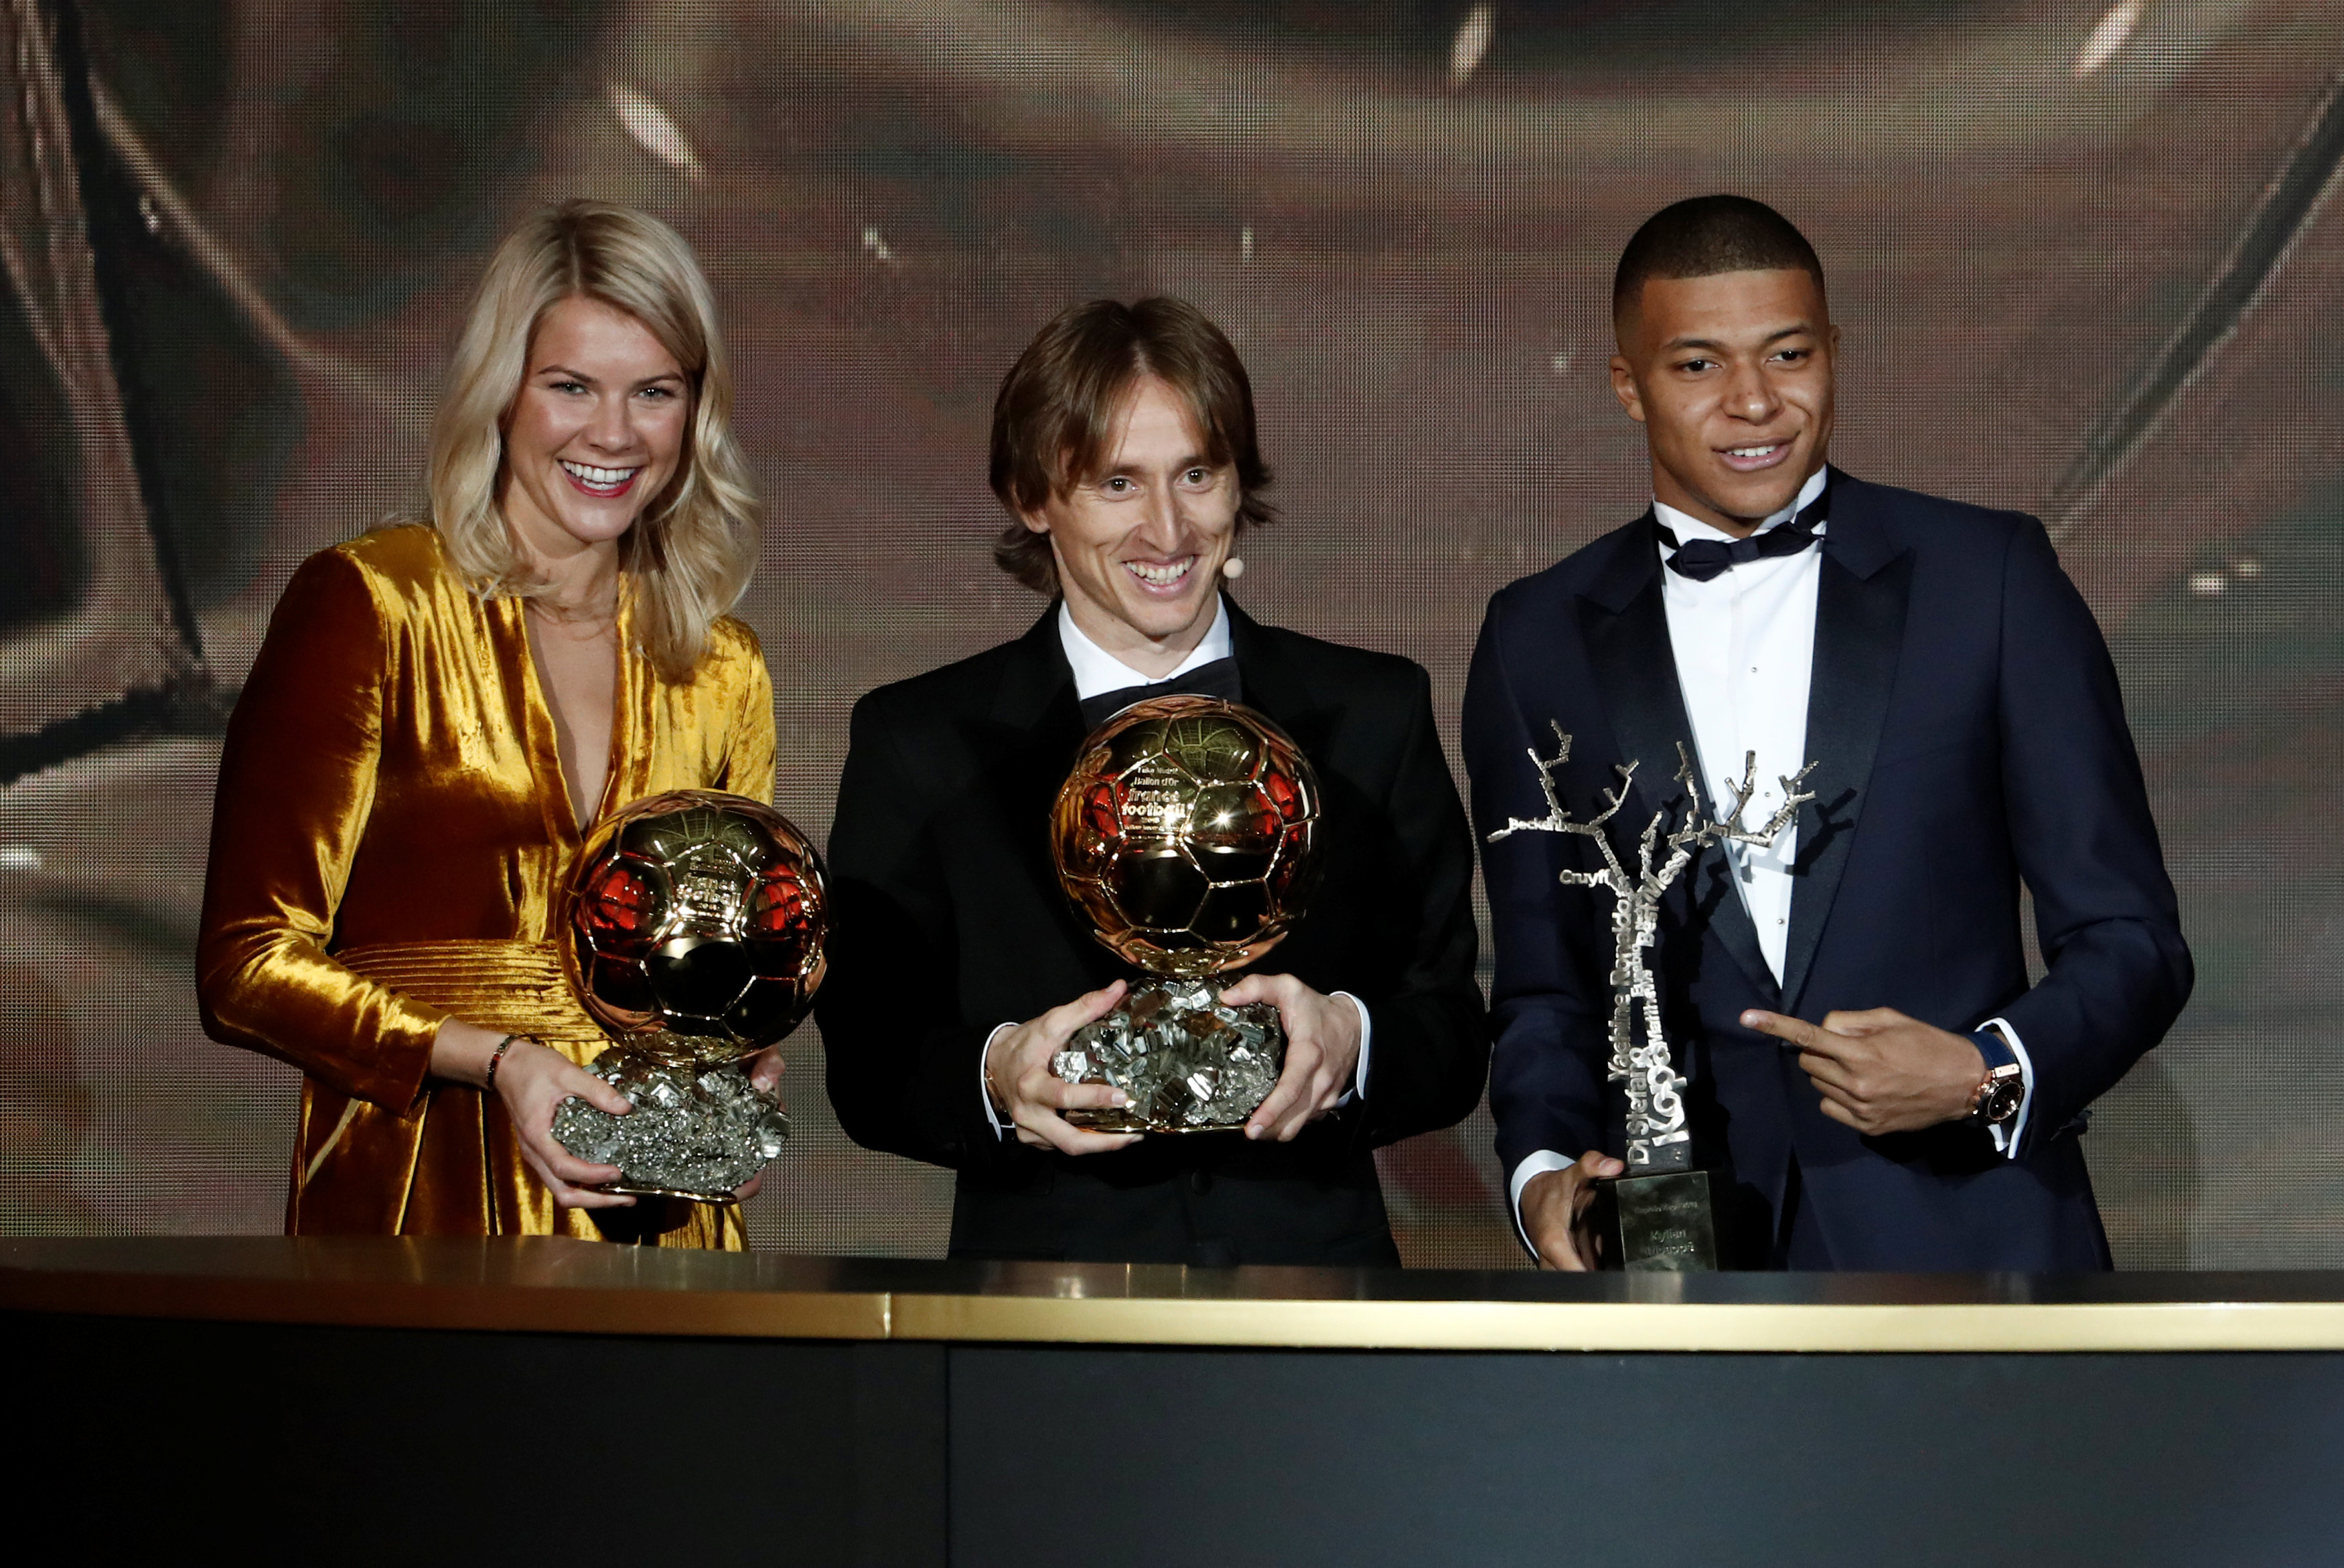 Football - Qui a gagné le Ballon d'Or ? Palmarès complet avec tous les  vainqueurs dont Lionel Messi, Karim Benzema ou Cristiano Ronaldo